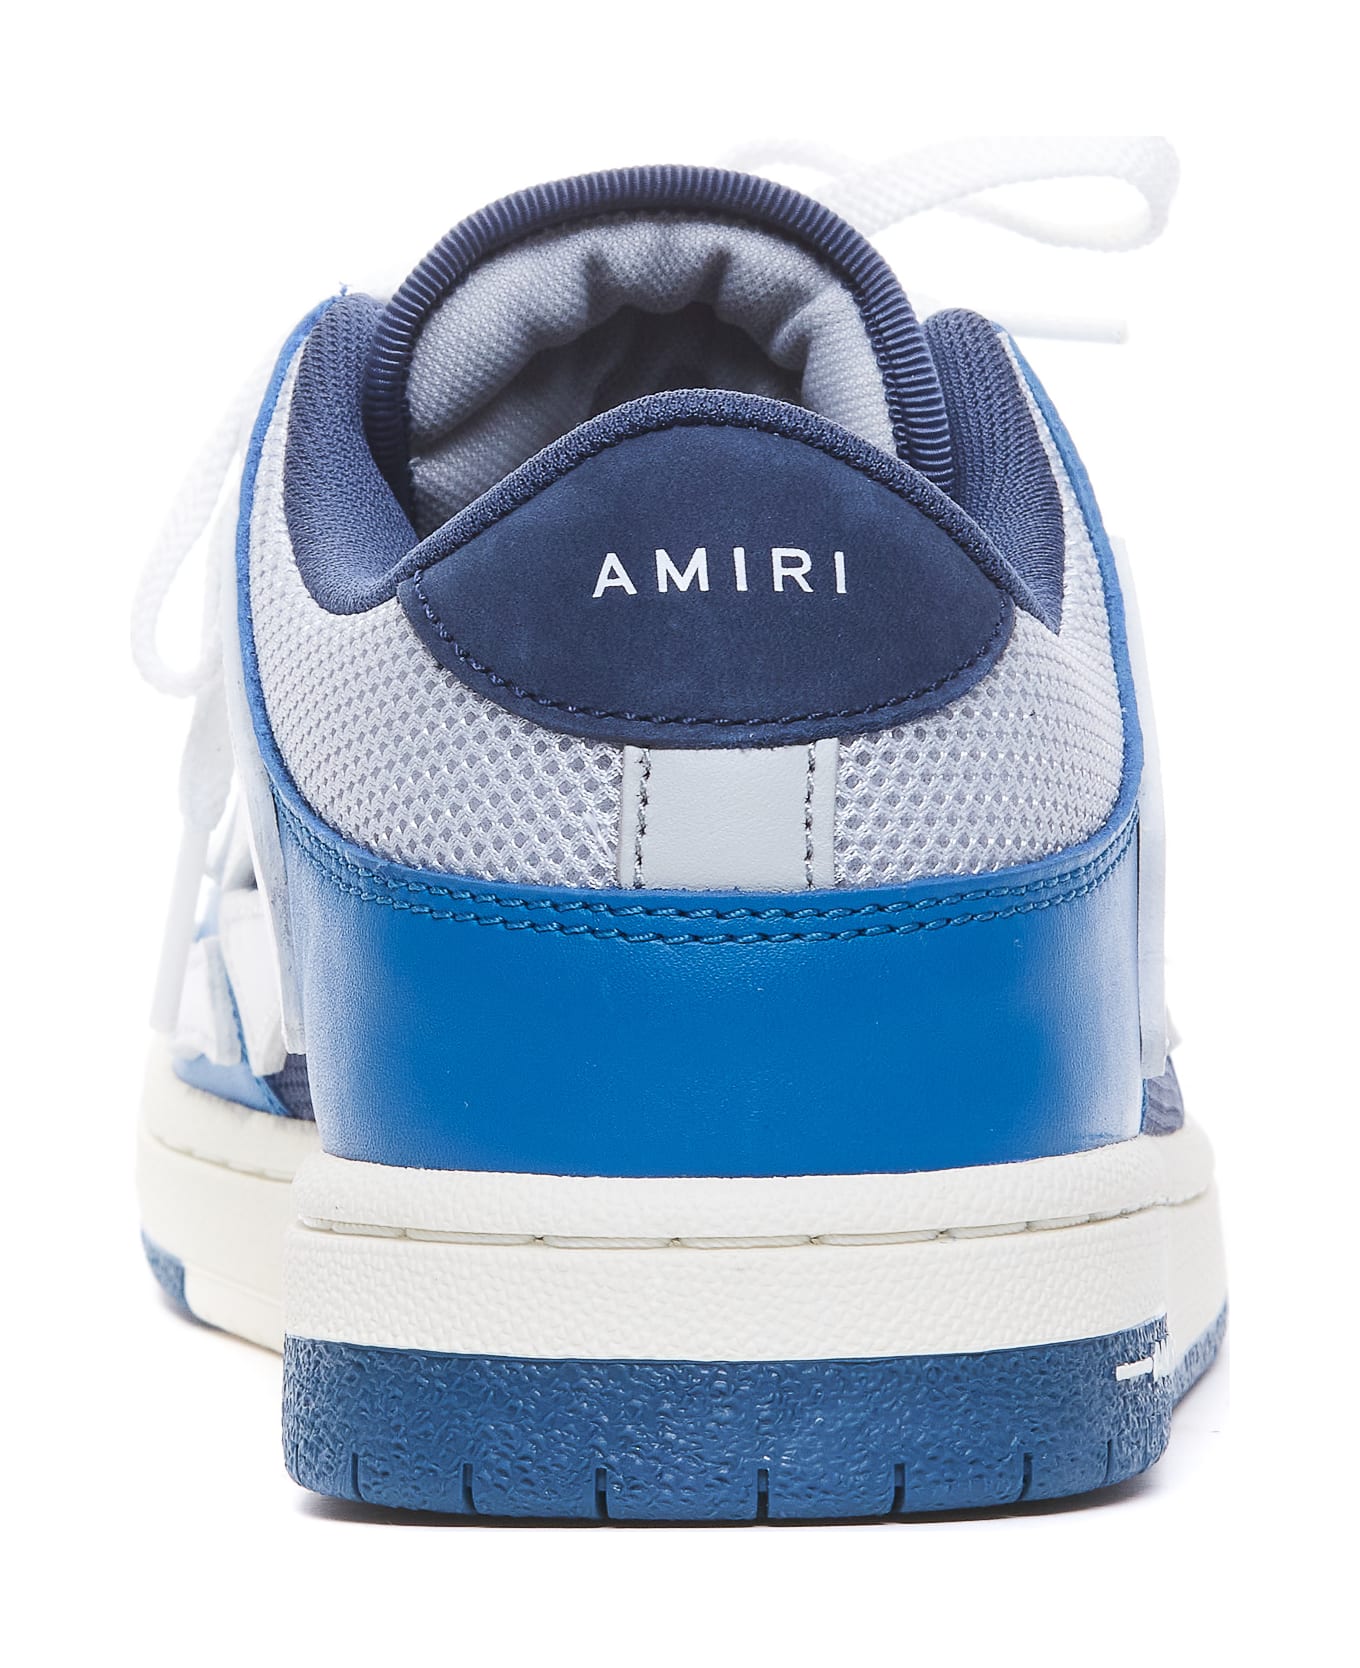 AMIRI Mesh Skel Top Sneakers - Blue